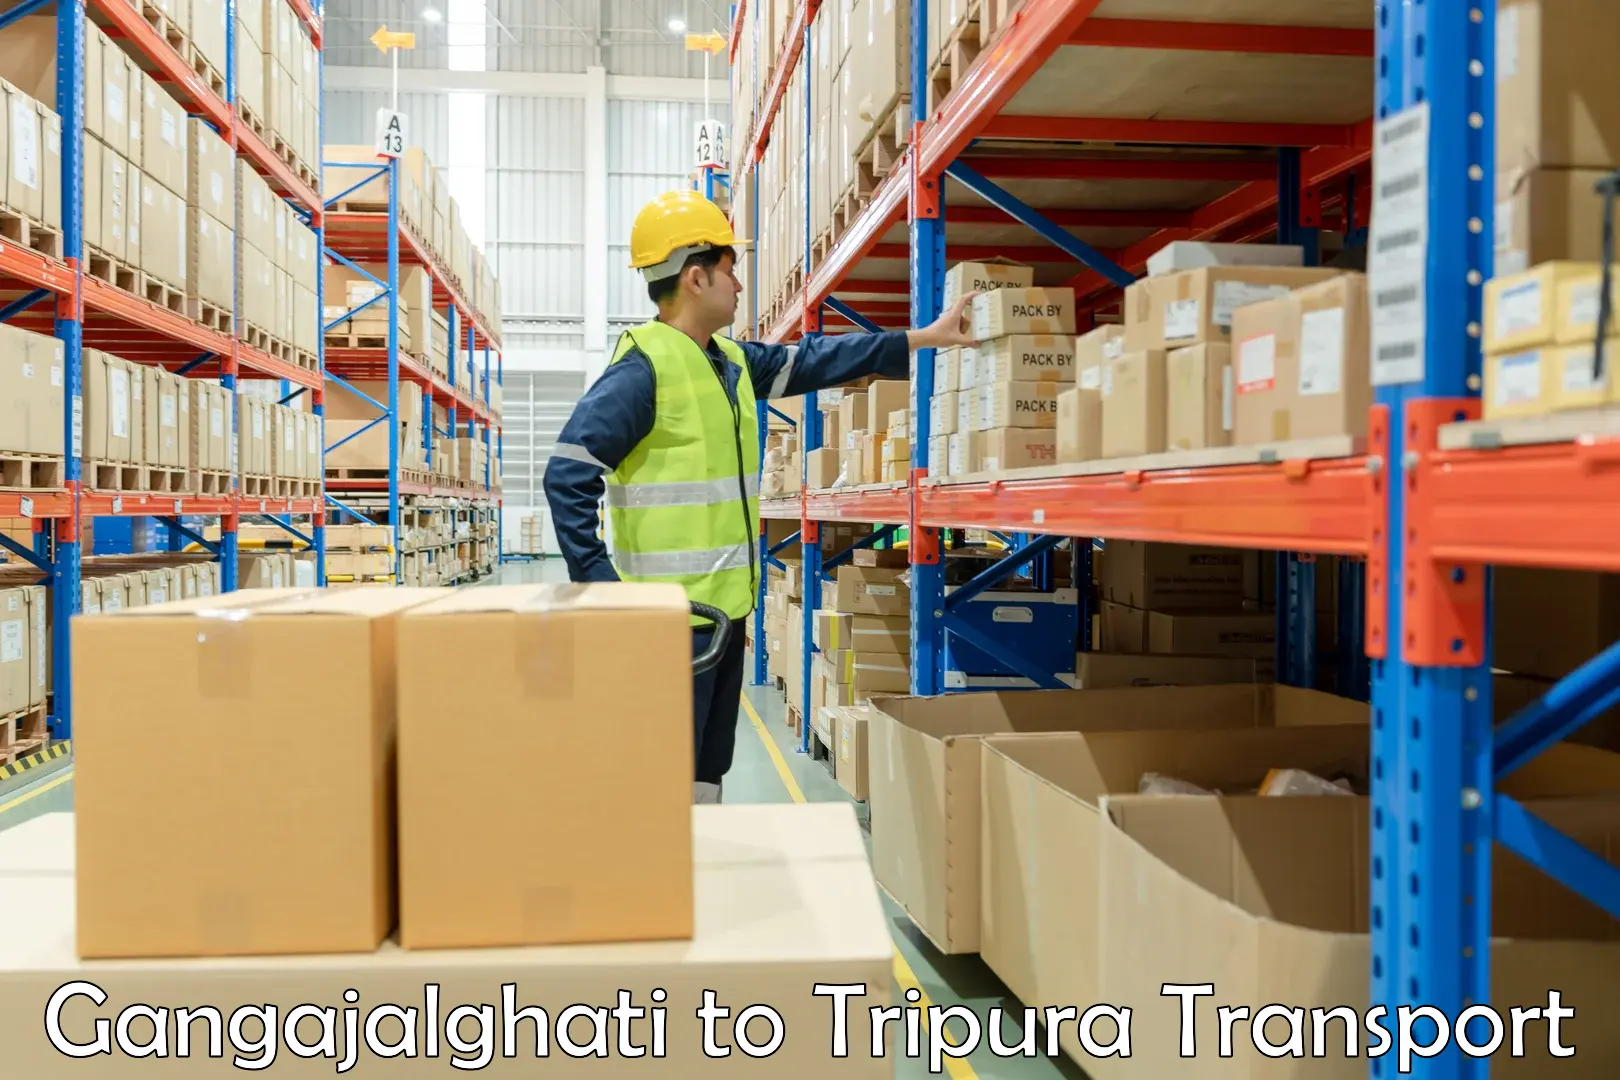 Furniture transport service Gangajalghati to Dhalai